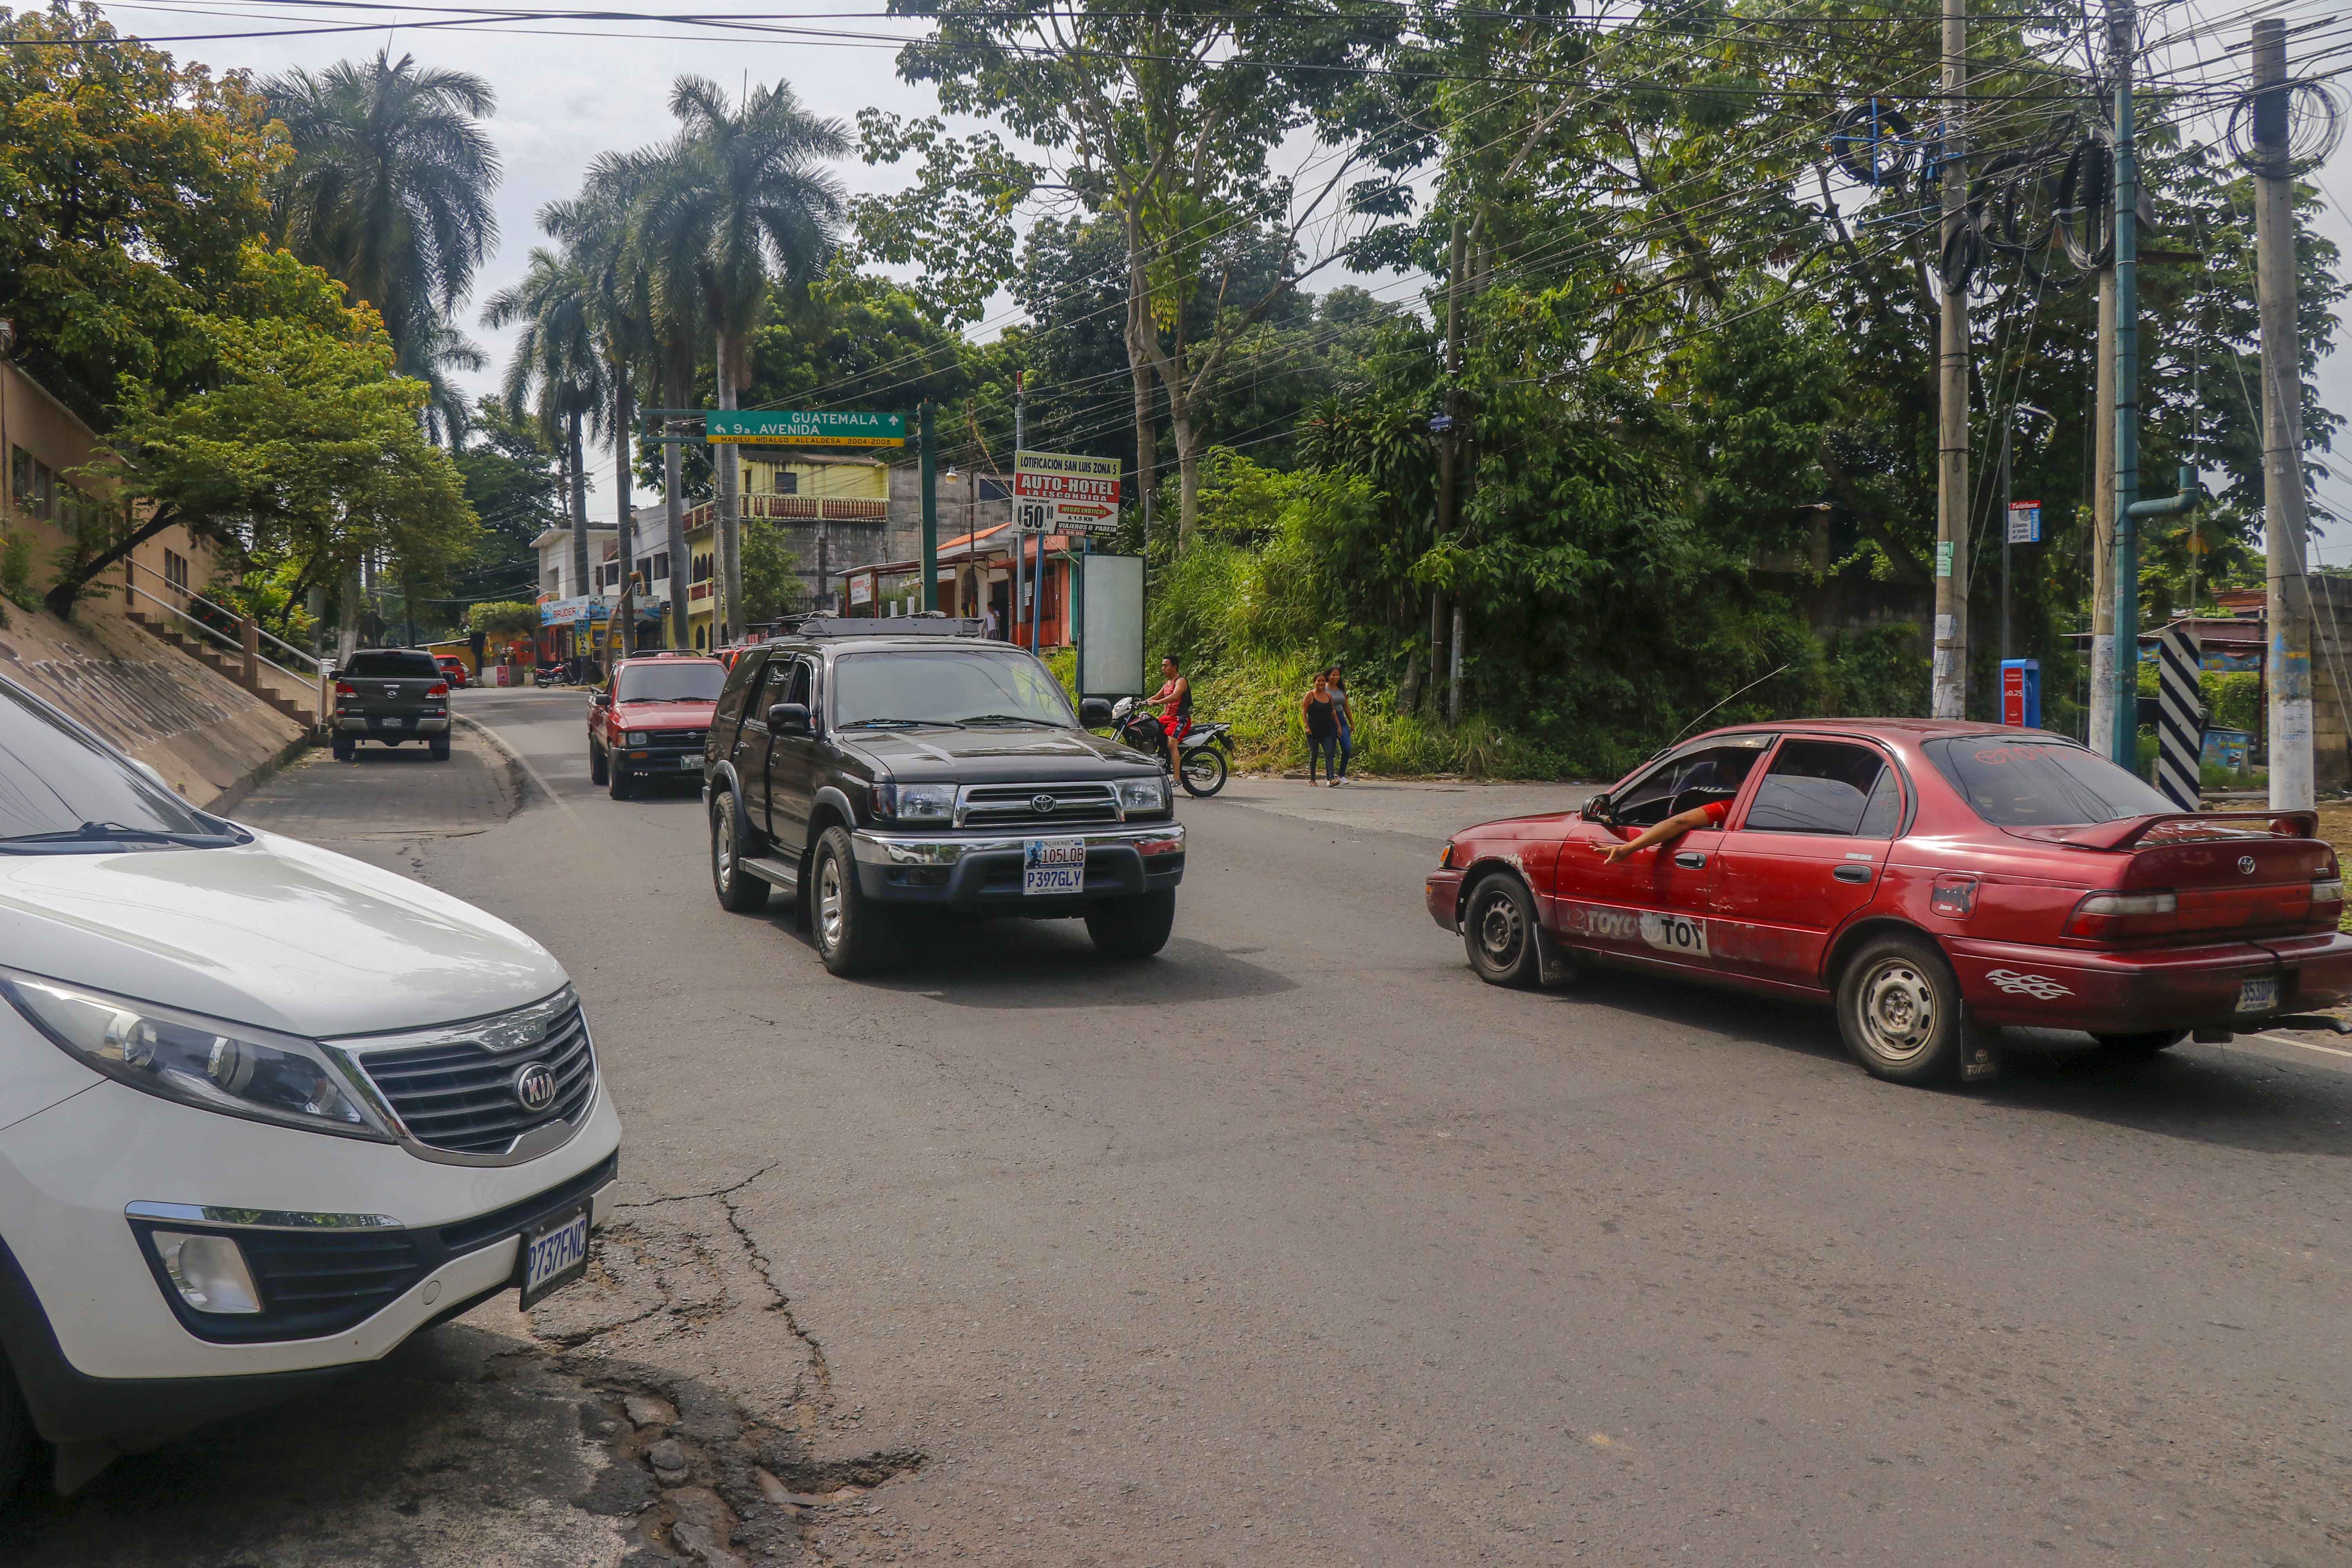 El desorden vial en las calles de Retalhuleu es un problema que las autoridades municipales deberán resolver. (Foto Prensa Libre: Rolando Miranda)